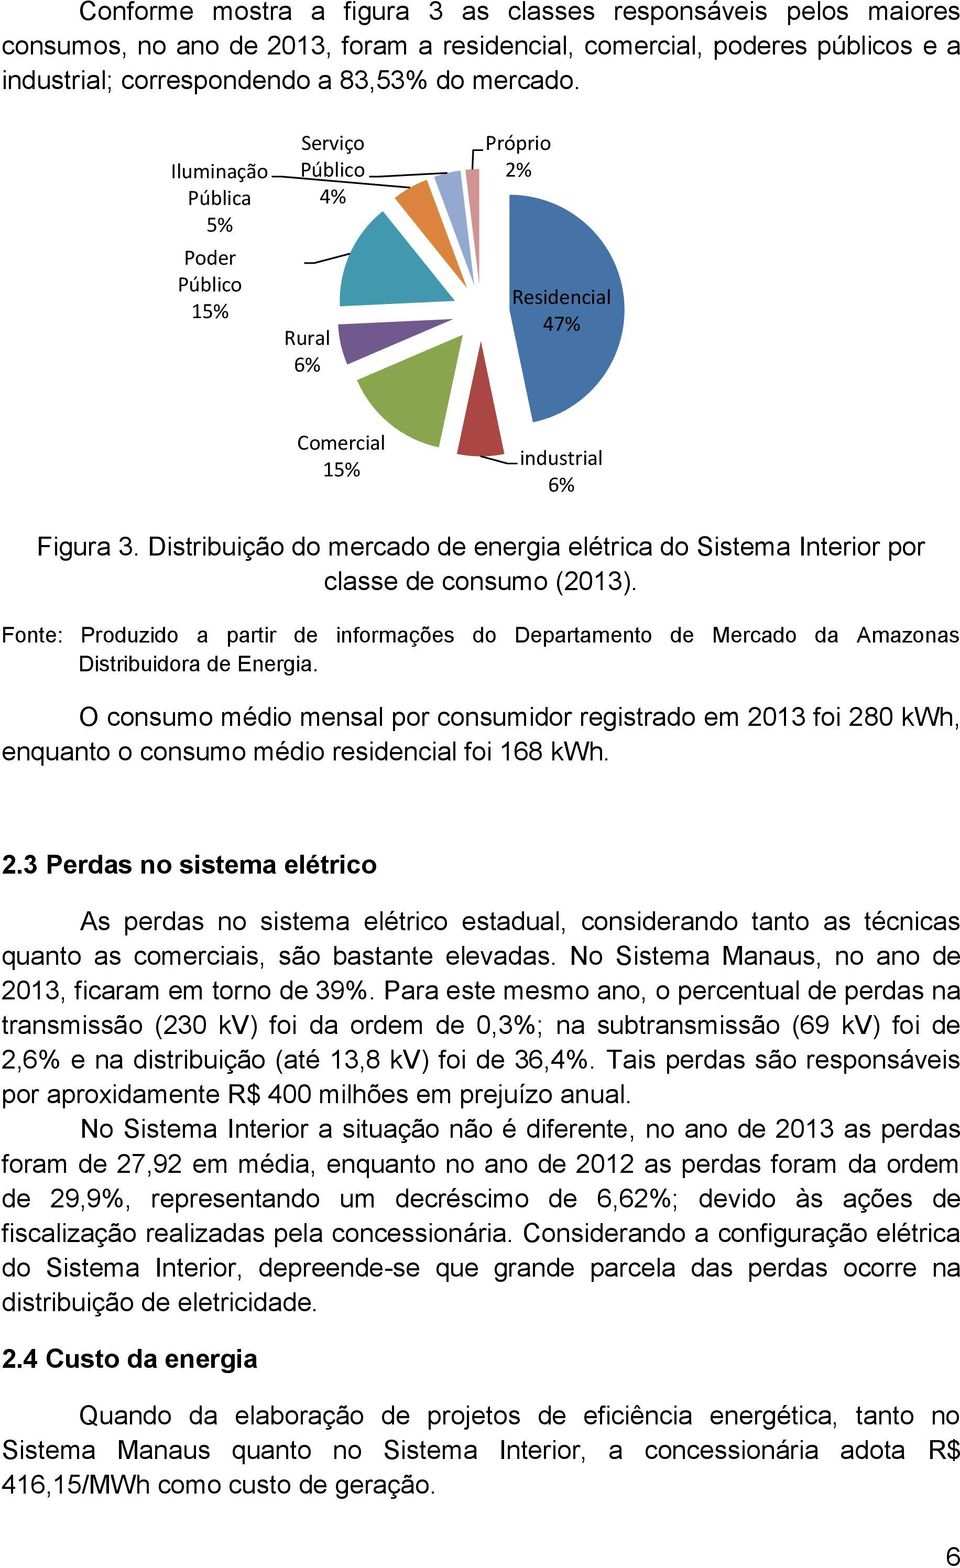 Distribuição do mercado de energia elétrica do Sistema Interior por classe de consumo (2013). Fonte: Produzido a partir de informações do Departamento de Mercado da Amazonas Distribuidora de Energia.